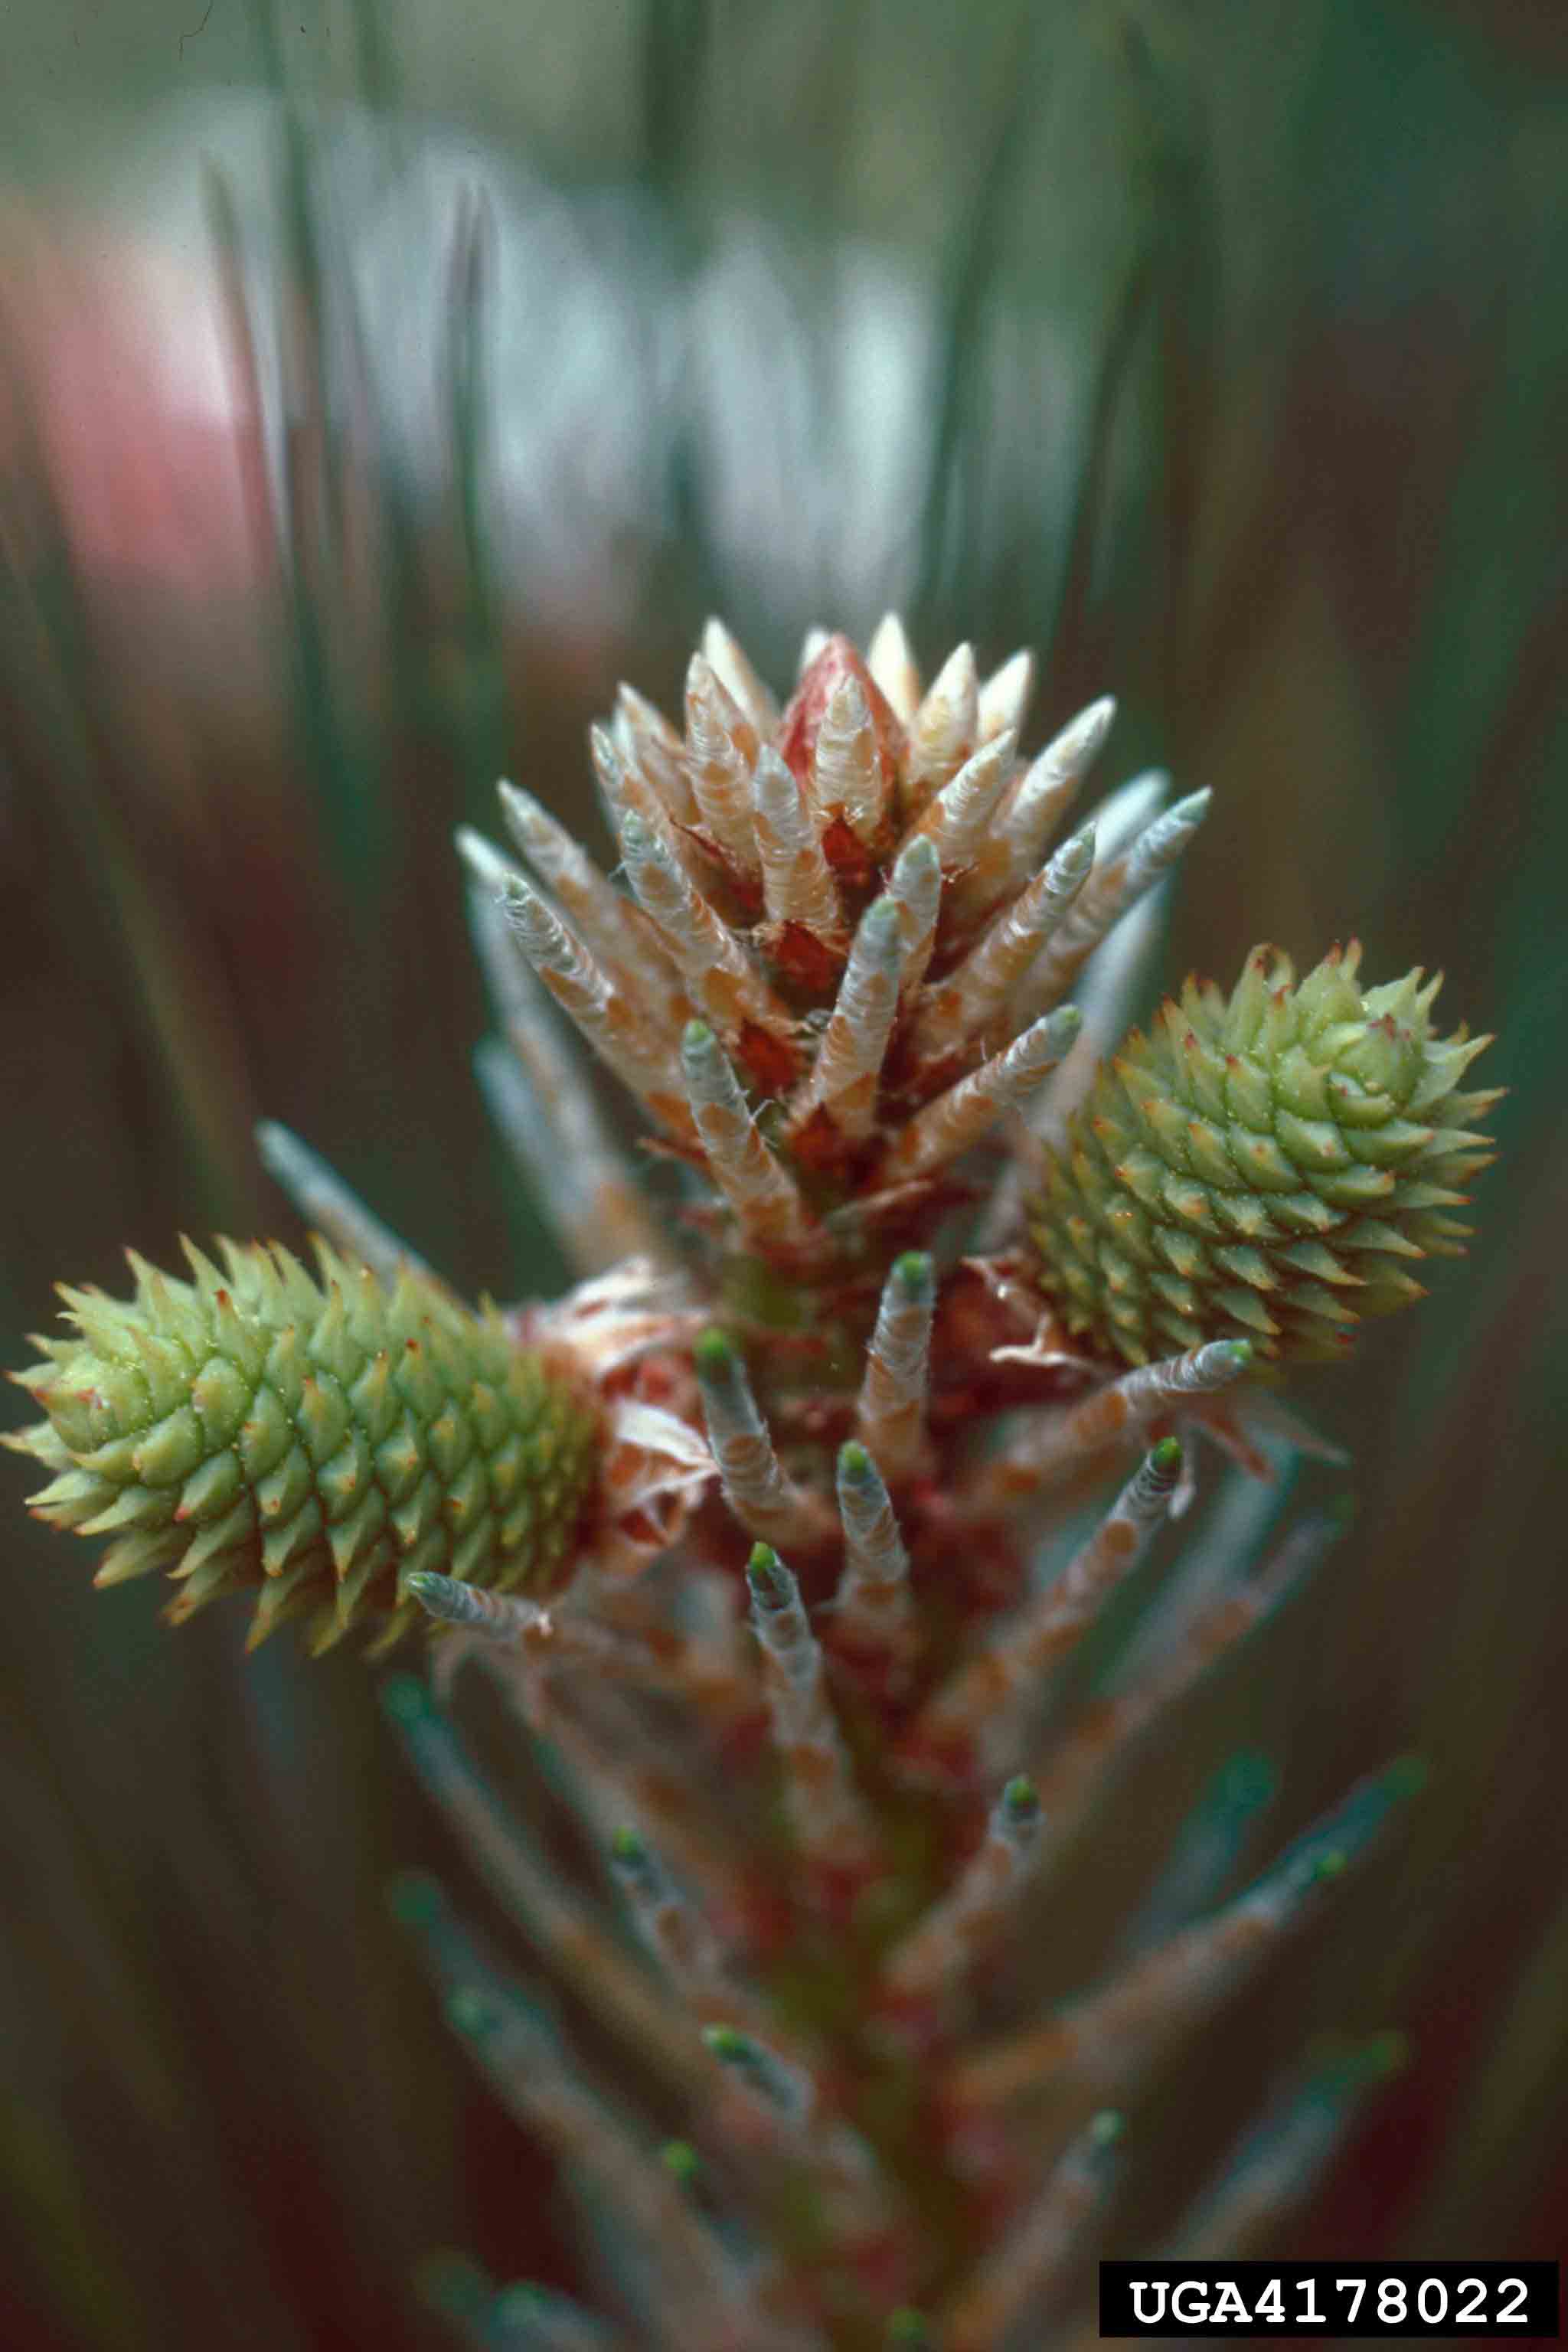 Loblolly pine immature cone